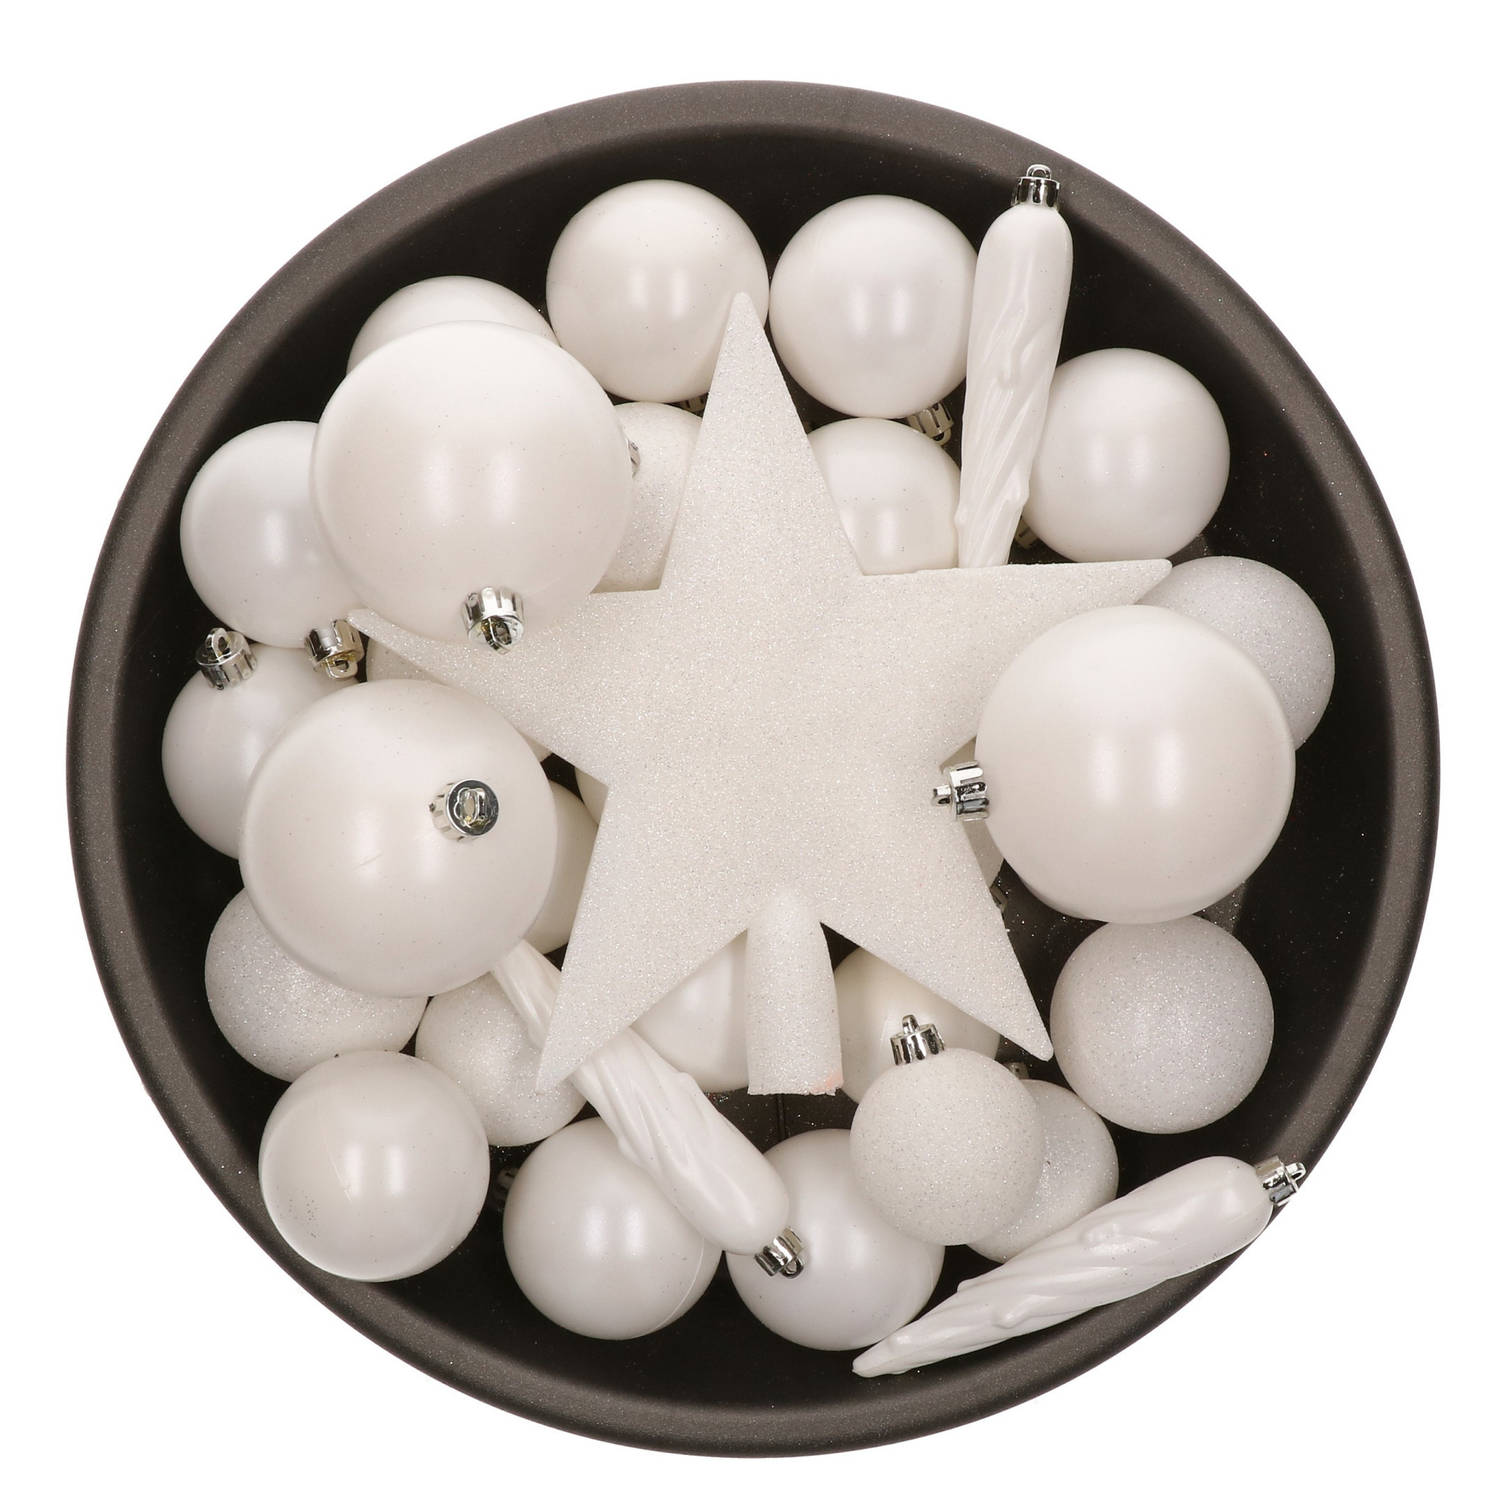 33x stuks kunststof kerstballen met piek 5-6-8 cm wit incl. haakjes - Kerstbal